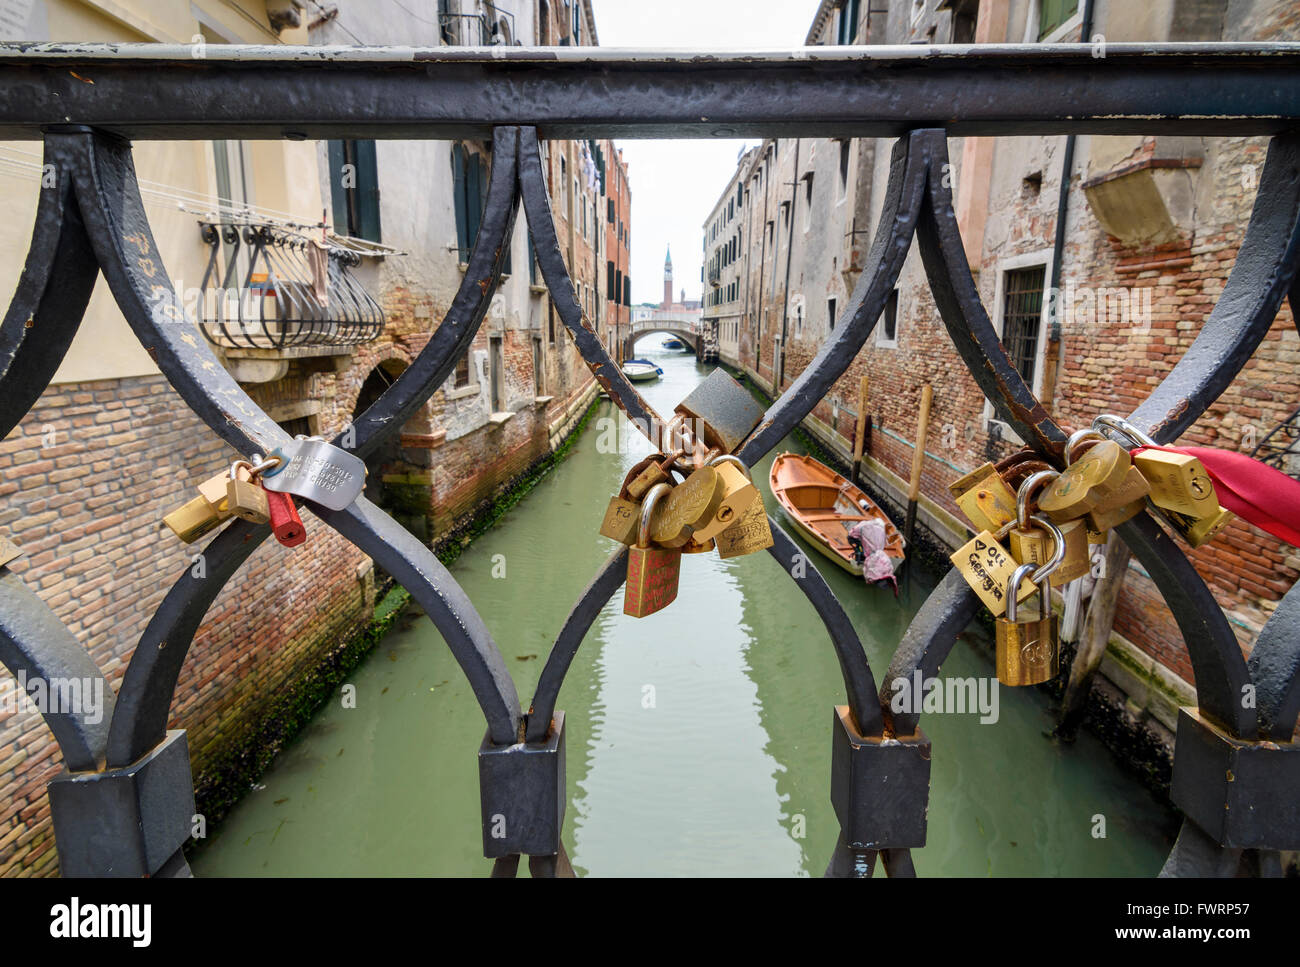 Liebesschlösser auf dem Geländer einer Brücke über den Rio De La Pleta, Calle De La Pieta, Castello, Venedig, Italien Stockfoto